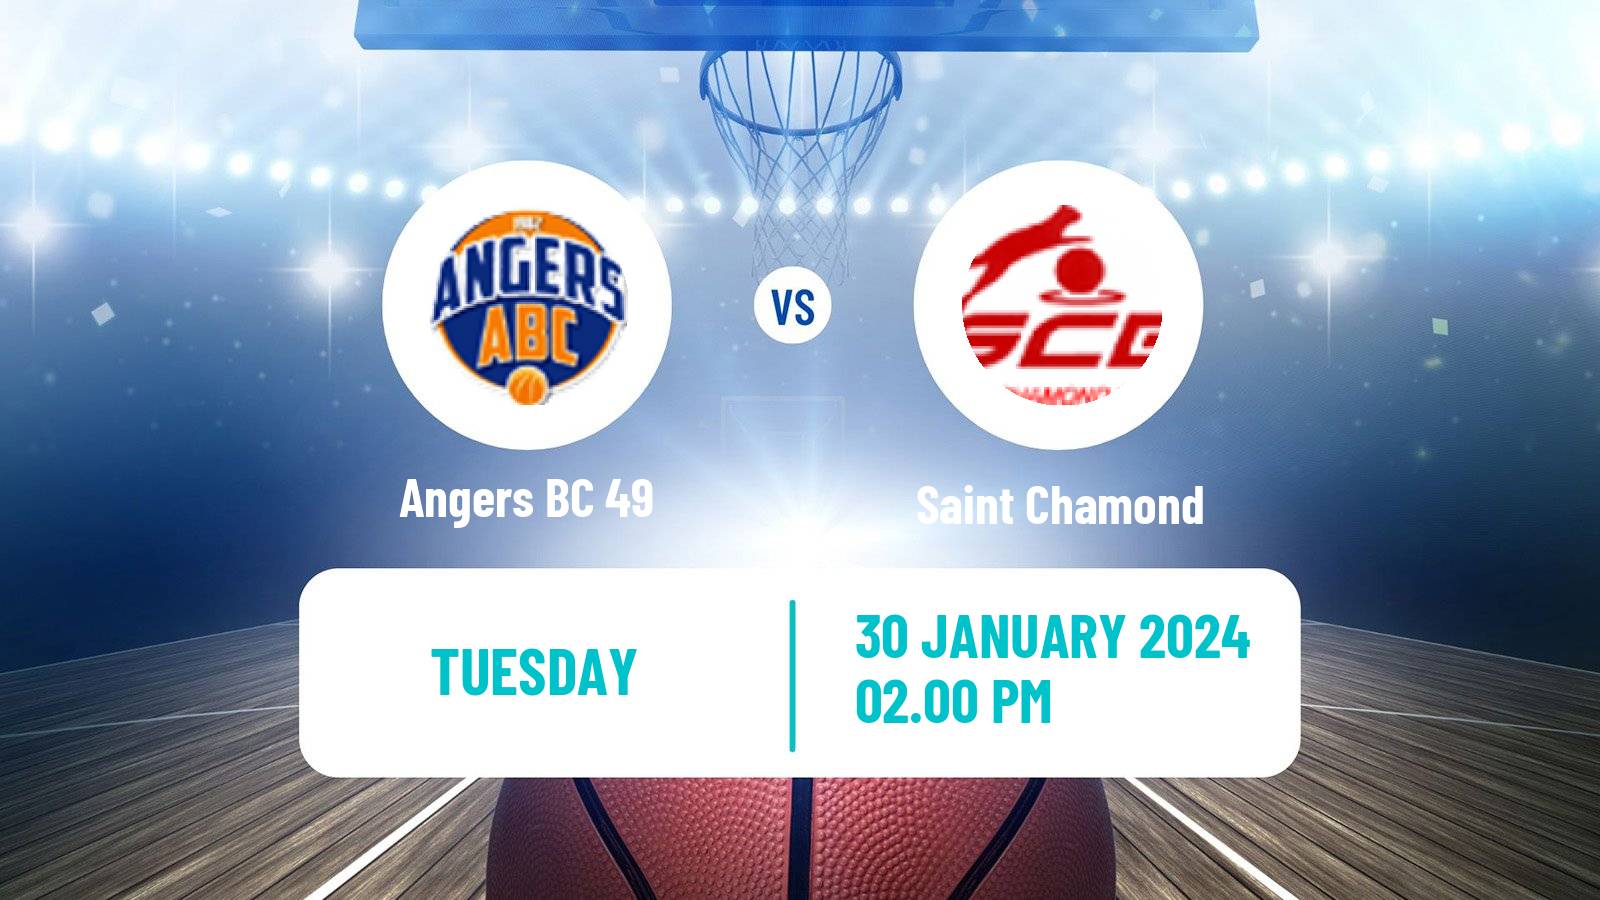 Basketball French LNB Pro B Angers BC 49 - Saint Chamond